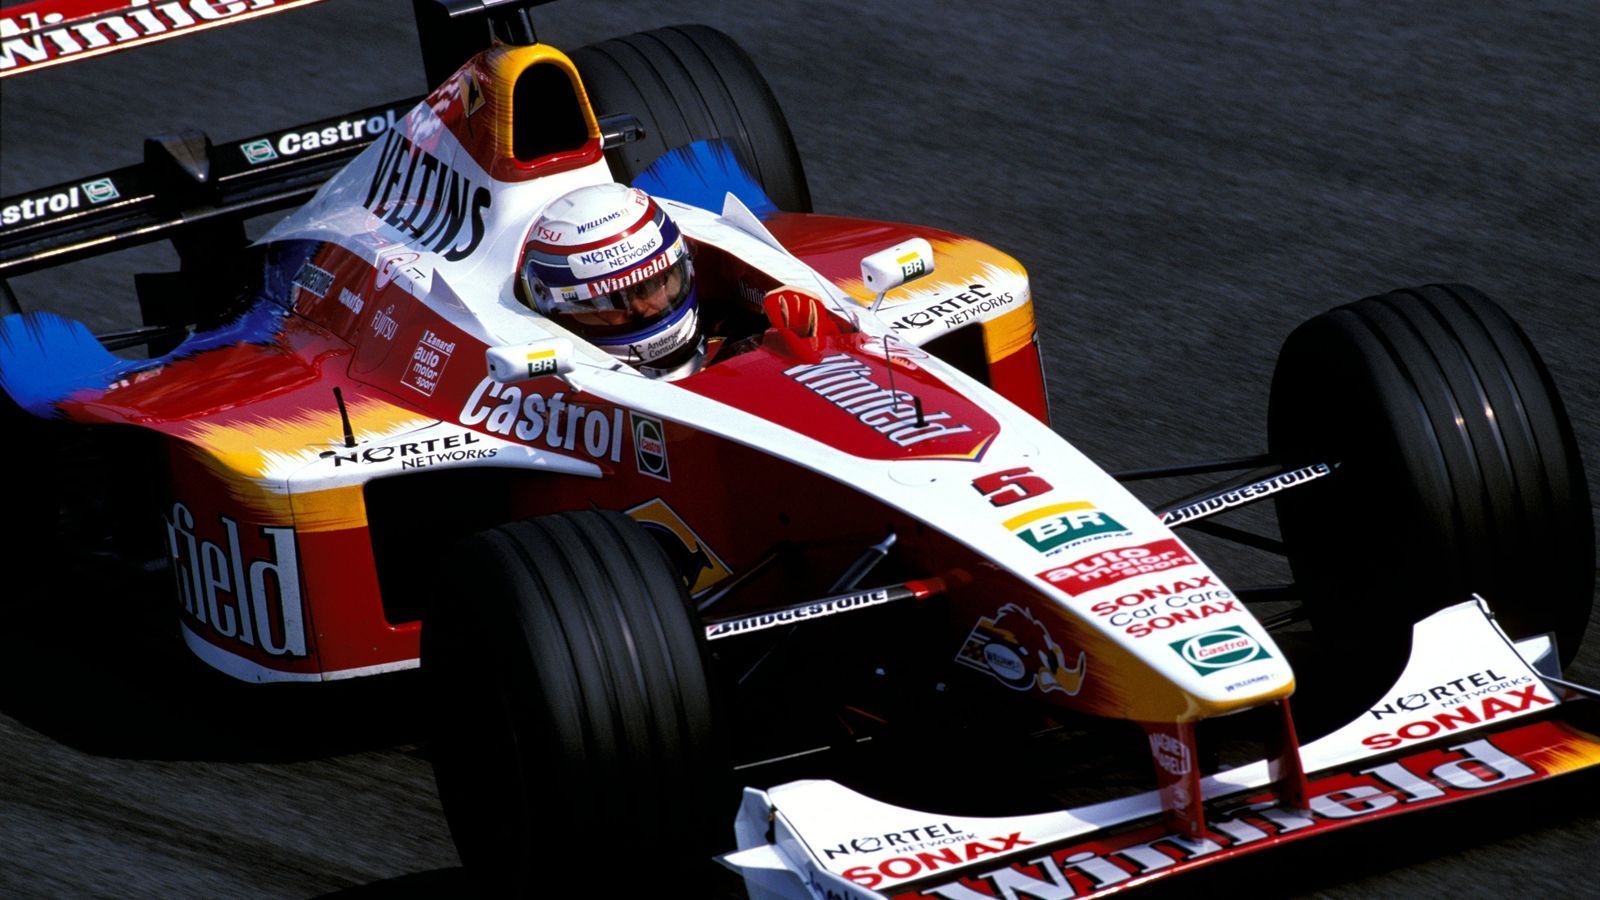 
                <strong>F1-Comeback wird zur Farce</strong><br>
                Die Rückkehr in die Formel 1 im Jahr 1999 wird zur Farce, Zanardi heuert zwar für drei Jahre bei Williams an, auch, weil er, wie er selbst sagte, noch eine Rechnung zu begleichen hatte. Die ging aber nicht auf, er bleibt als Teamkollege von Ralf Schumacher ohne Punkte und zieht sich sowohl aus der Formel 1 als auch vorübergehend aus dem Motorsport zurück. 41 Formel-1-Rennen hat er insgesamt absolviert, zu Buche steht ein einziger WM-Punkt.
              